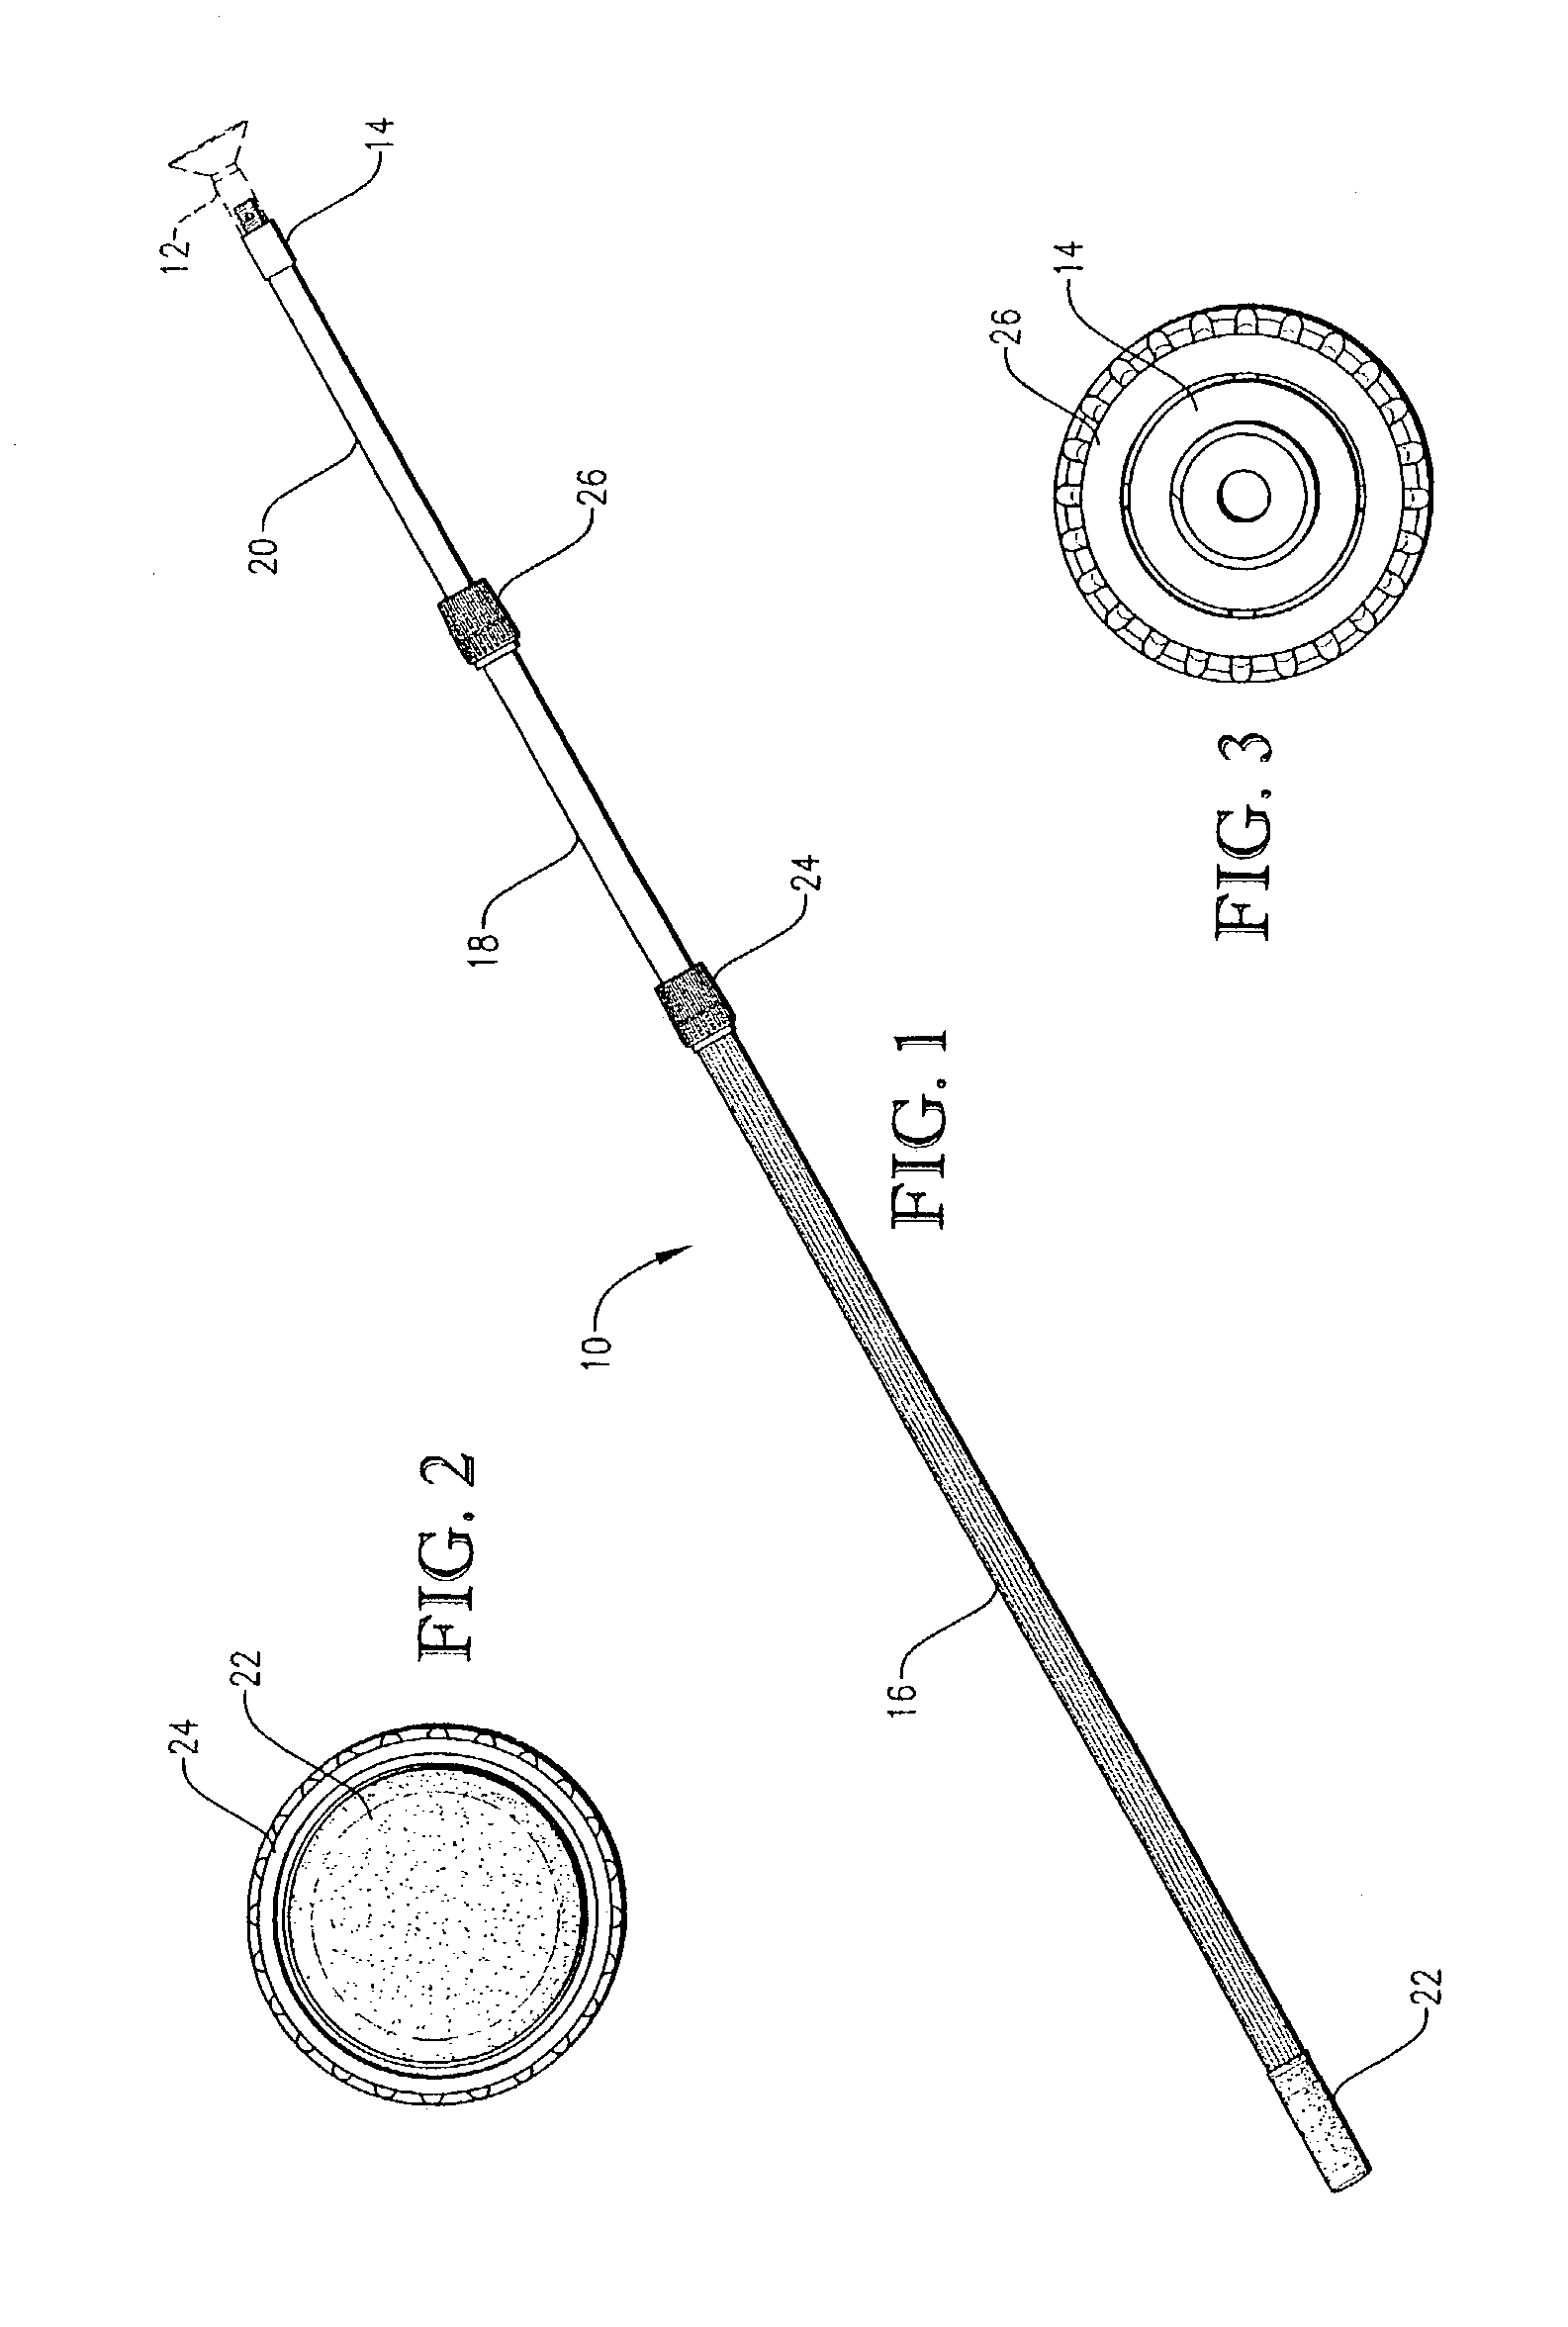 Non-conductive extension pole